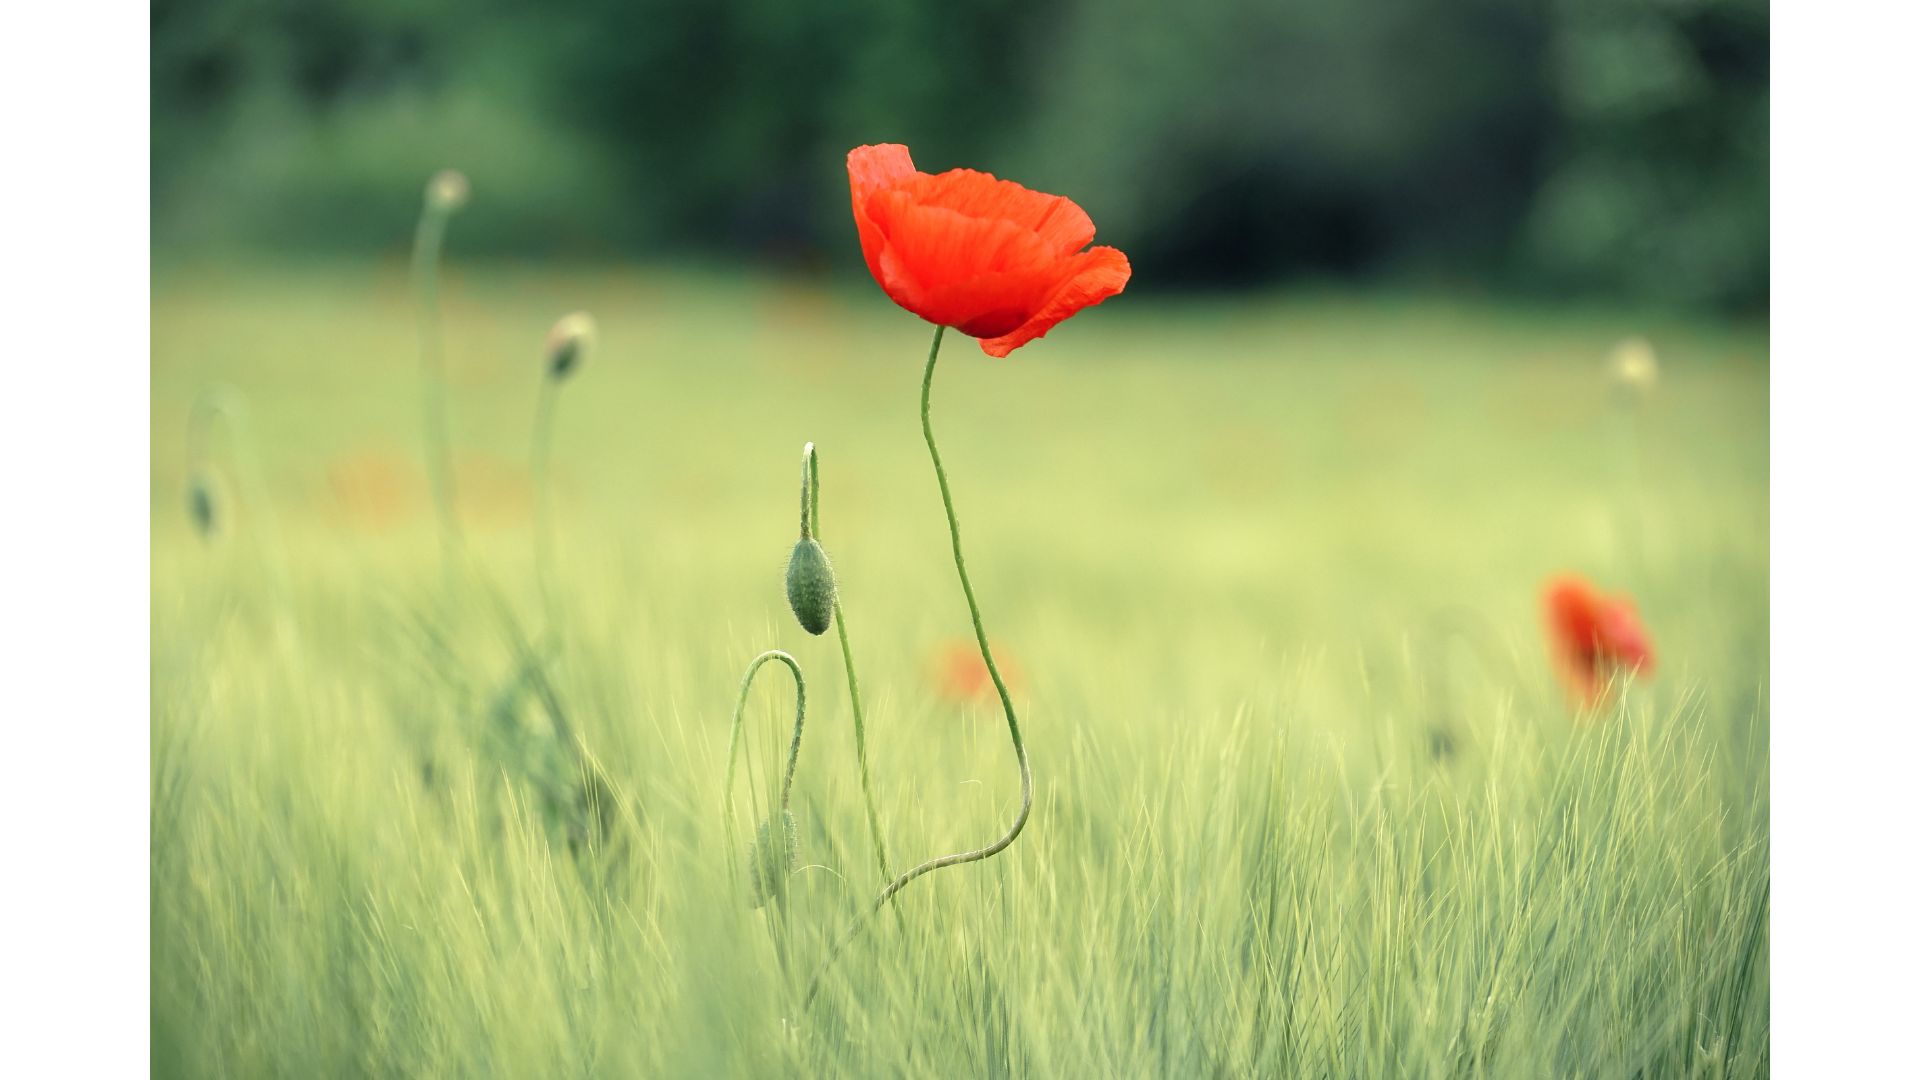 Flor roja en campo de hierba verde durante el día